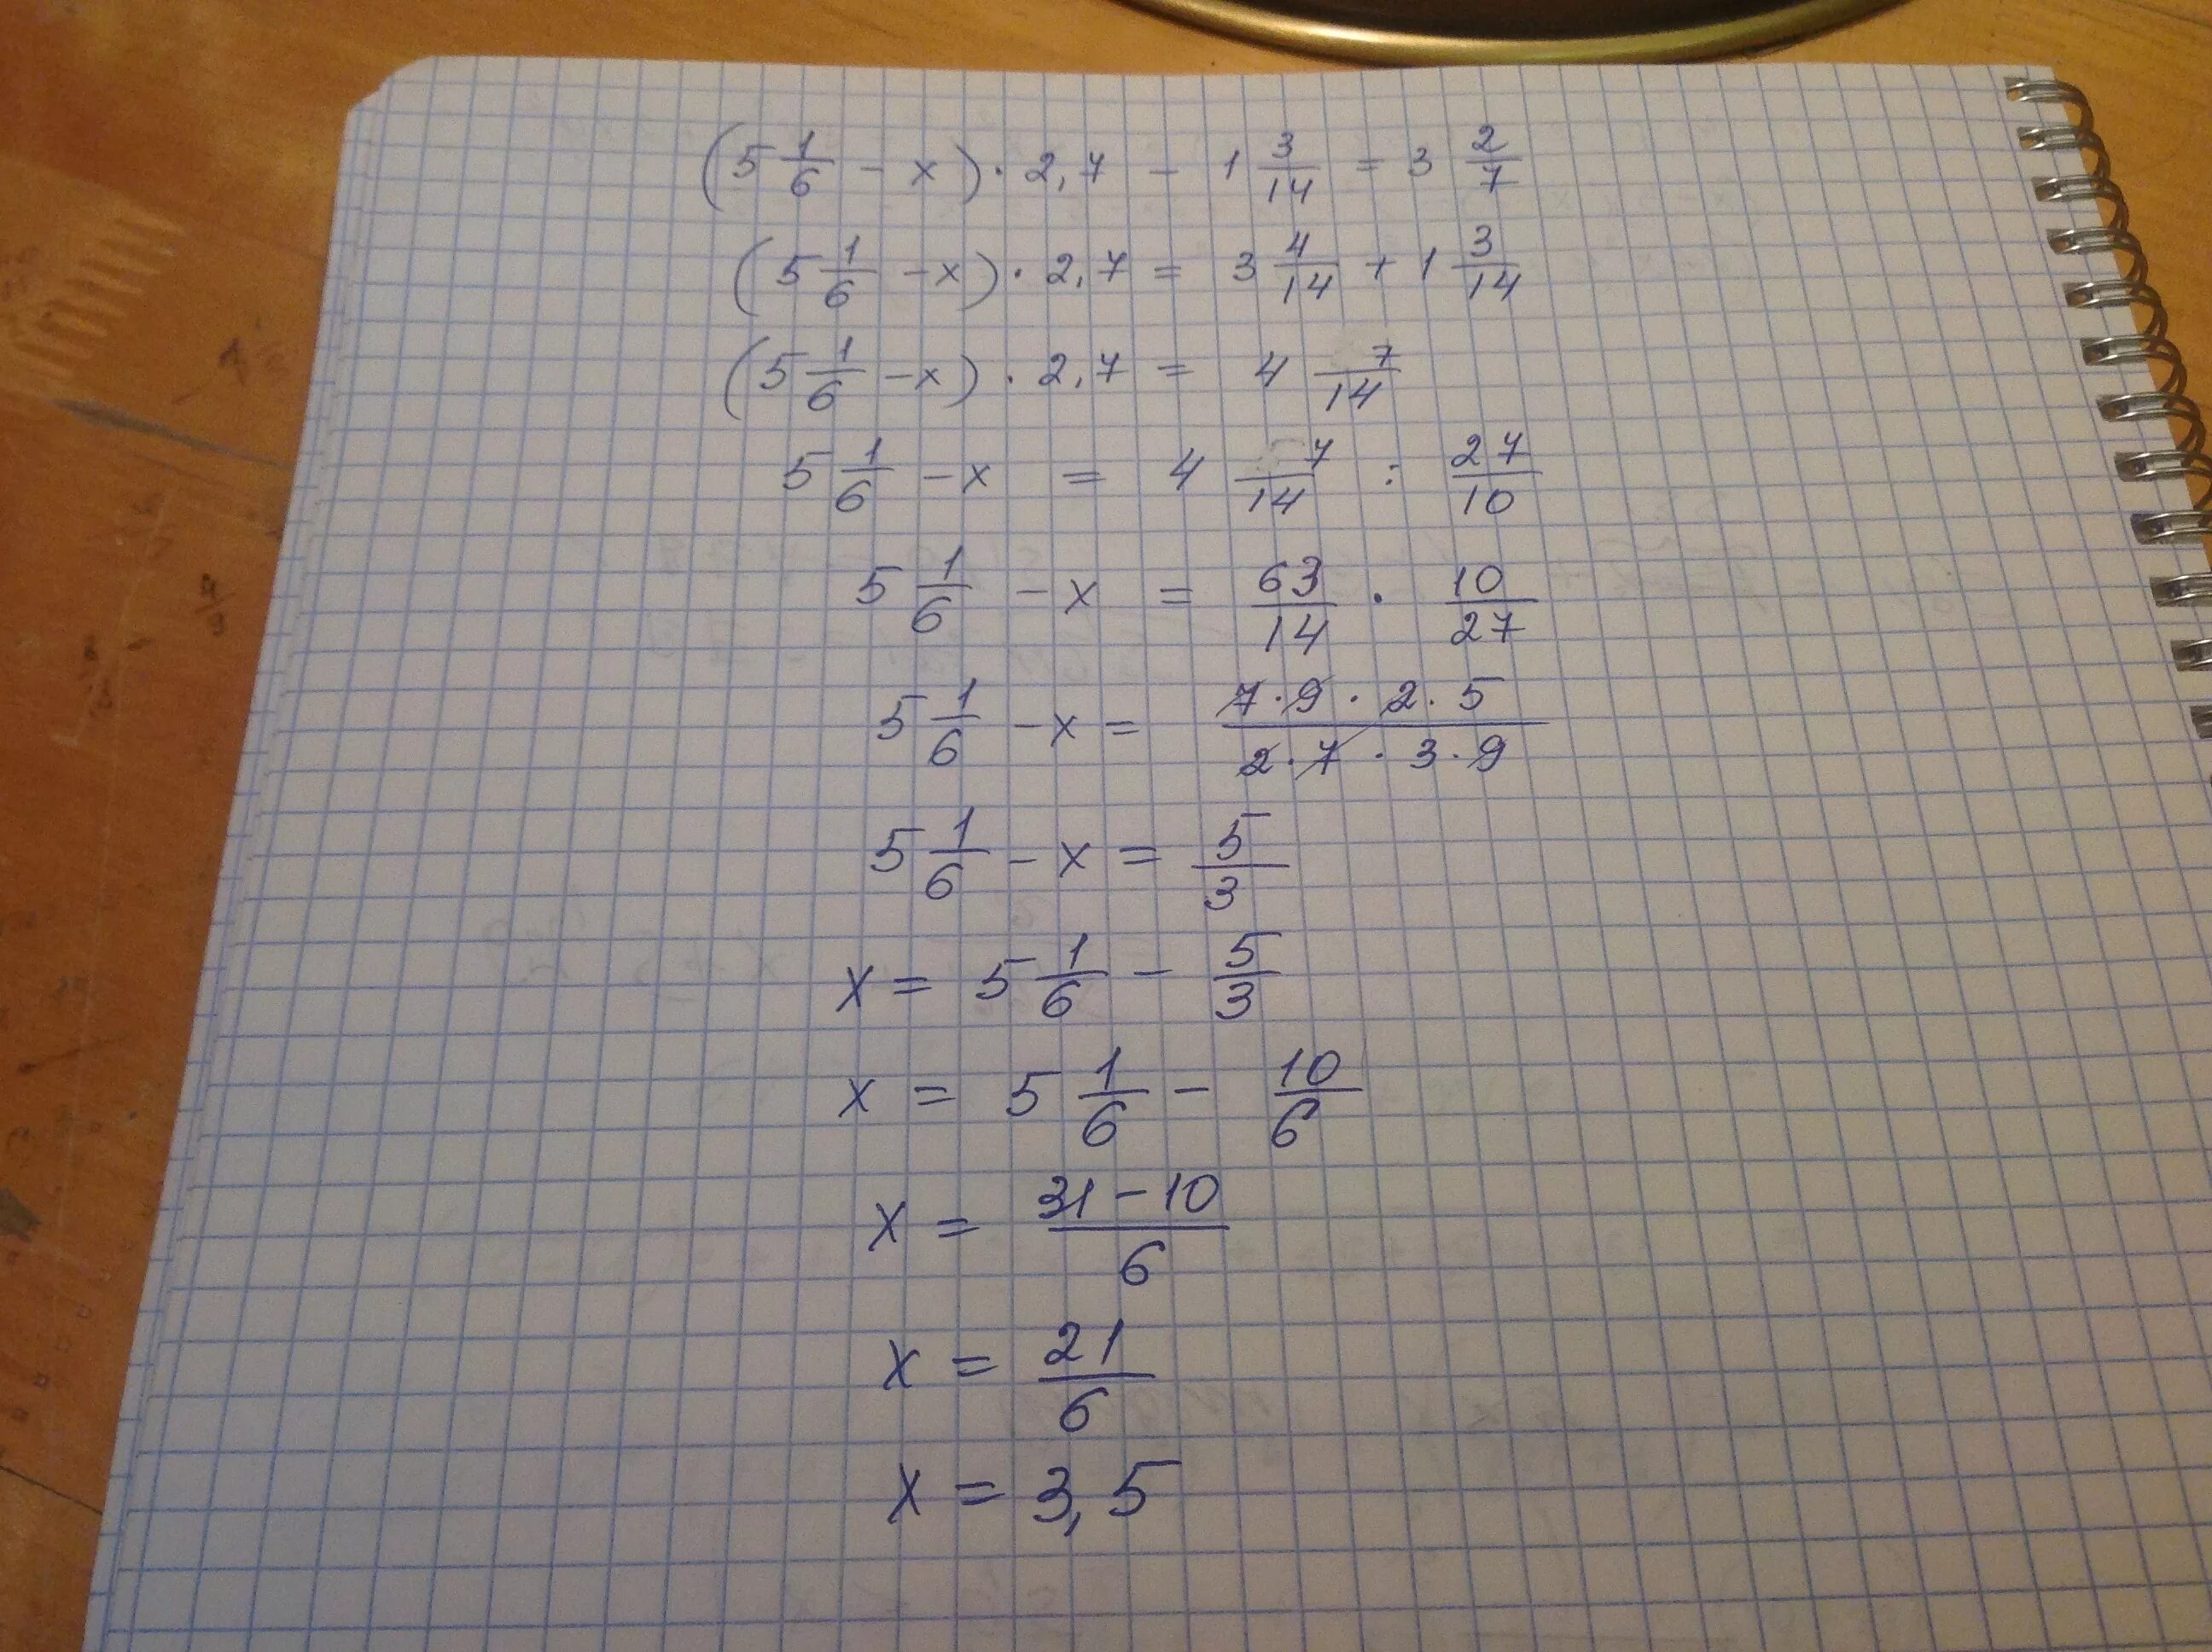 5 4x2 3x 1 0. 2/X-3=7/X+1. X-2/3=3x+1/7. 3,5/√1-X=1 1/6. 5-2(1-Х)=7x+6.